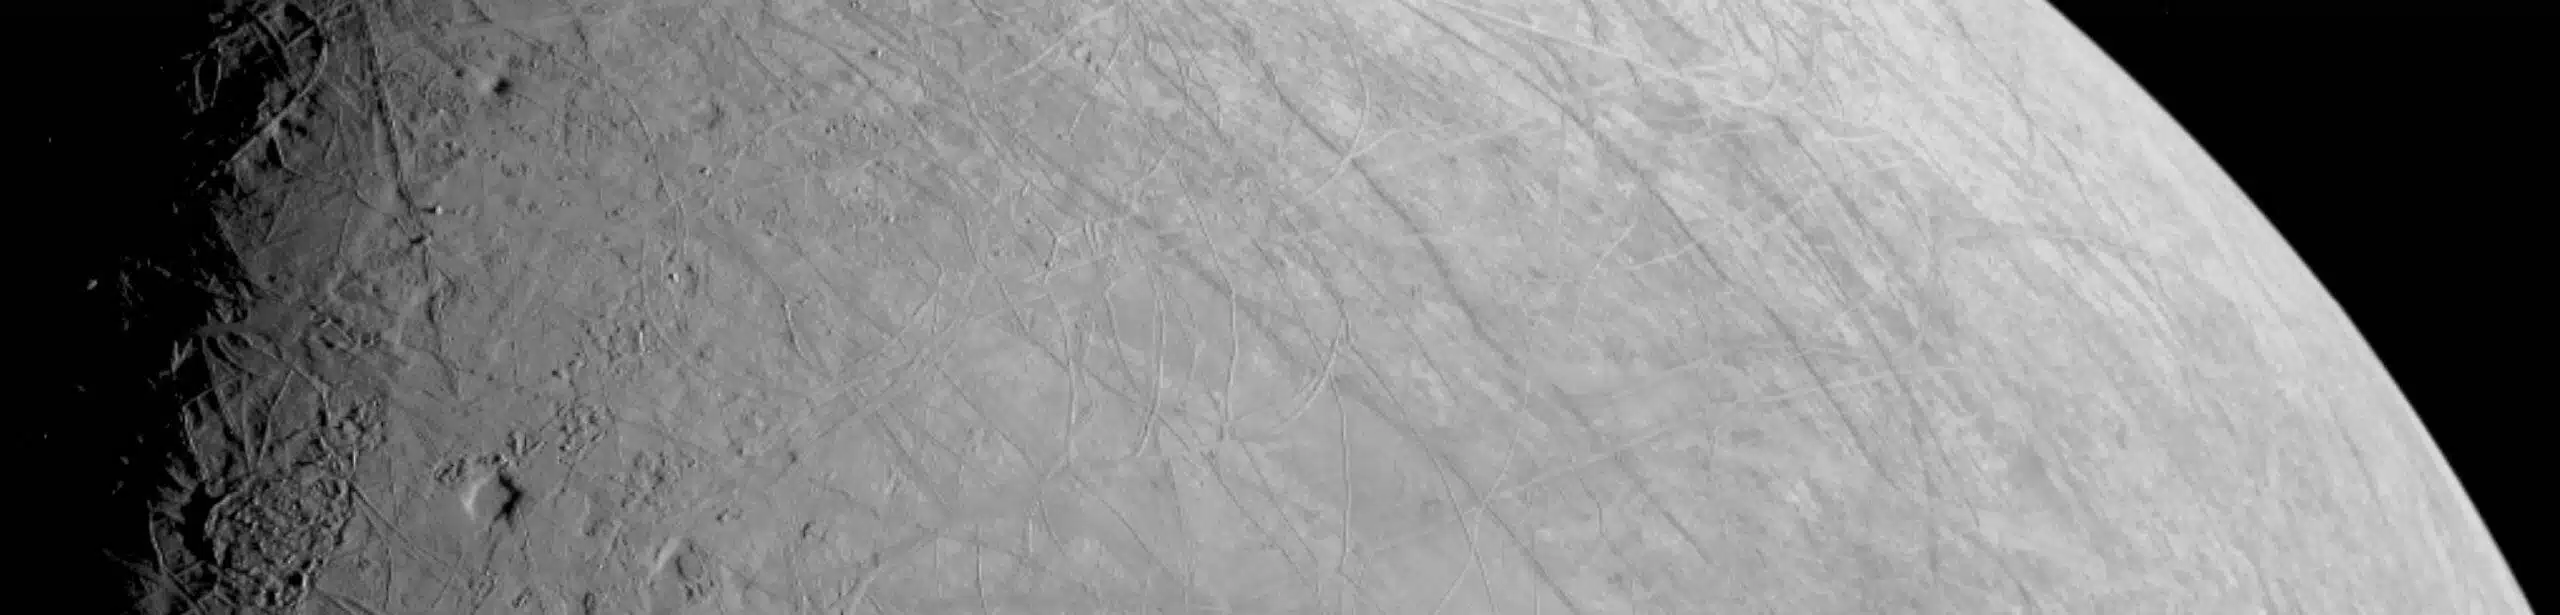 פני השטח המורכבים מכוסי הקרח של אירופה, הירח של צדק, צולמו על ידי החללית ג'ונו בזמן היעף של החללית ב-29 בספטמבר 2022. בגישה הכי קרובה, החללית הייתה במרחק של כ-352 ק"מ. קרדיט: NASA/JPL-Caltech/SWRI/MSSS